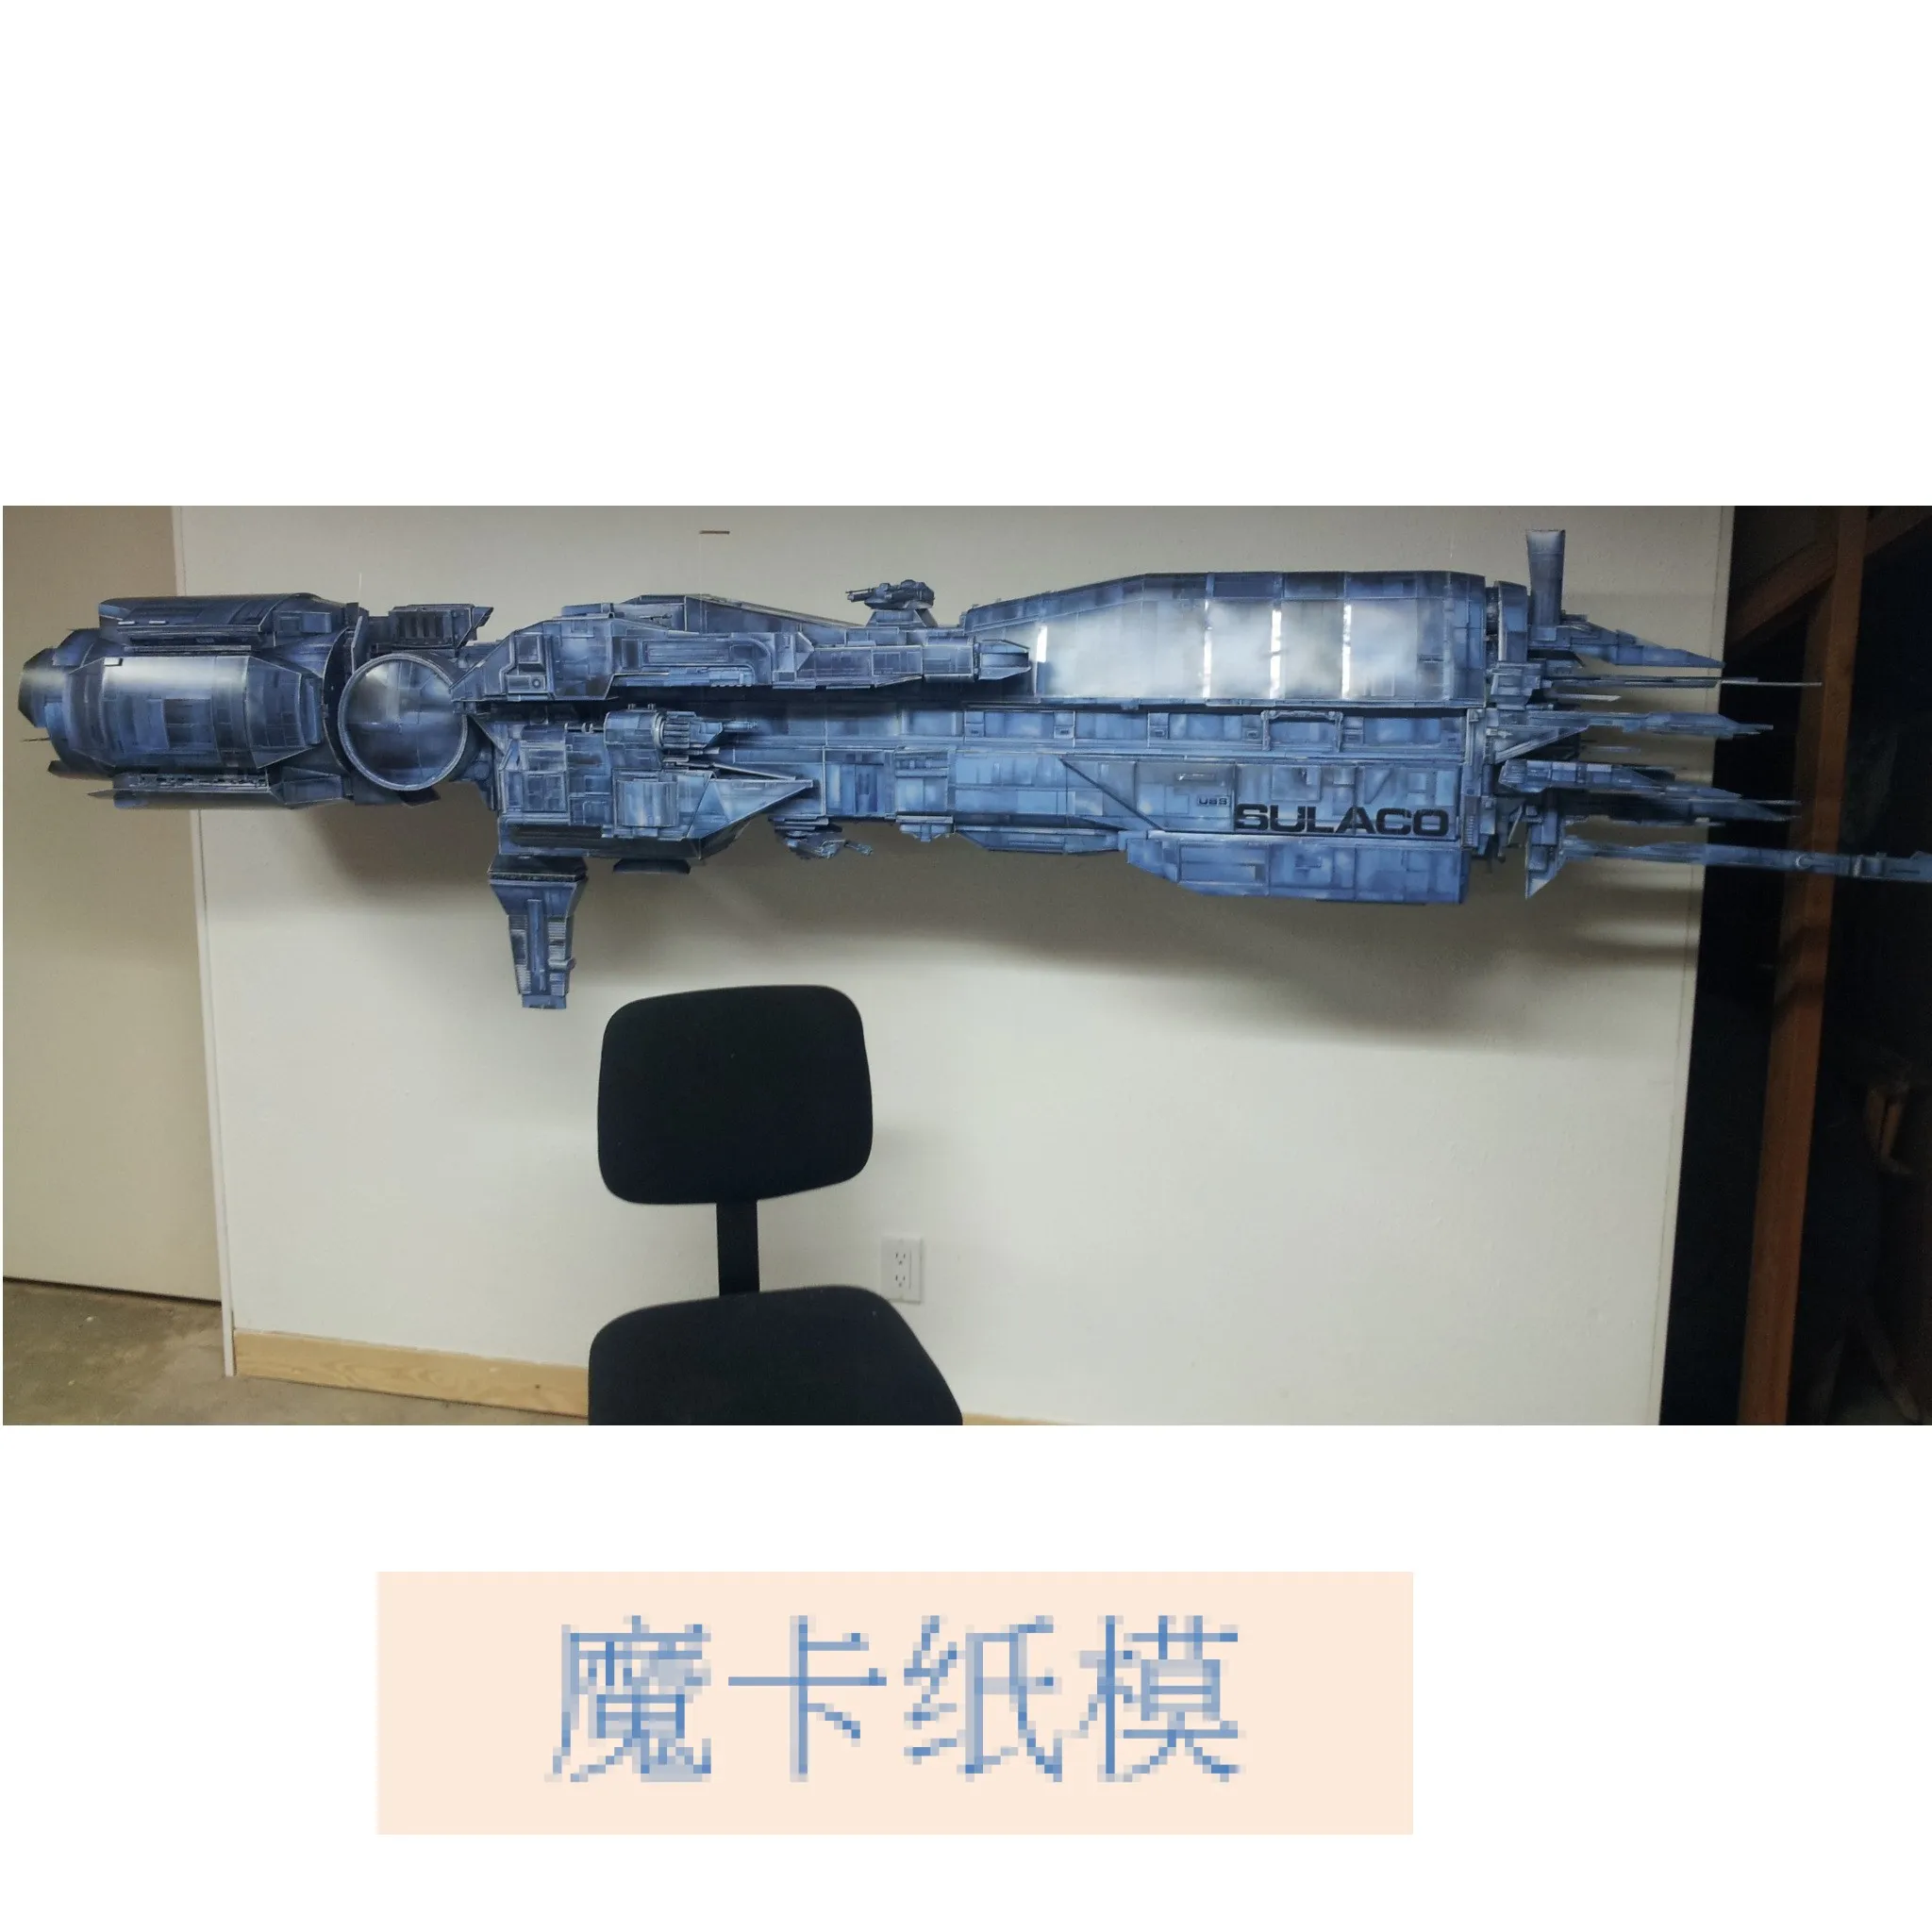 Alien-USS Sulaco космический корабль 3D бумажная модель DIY